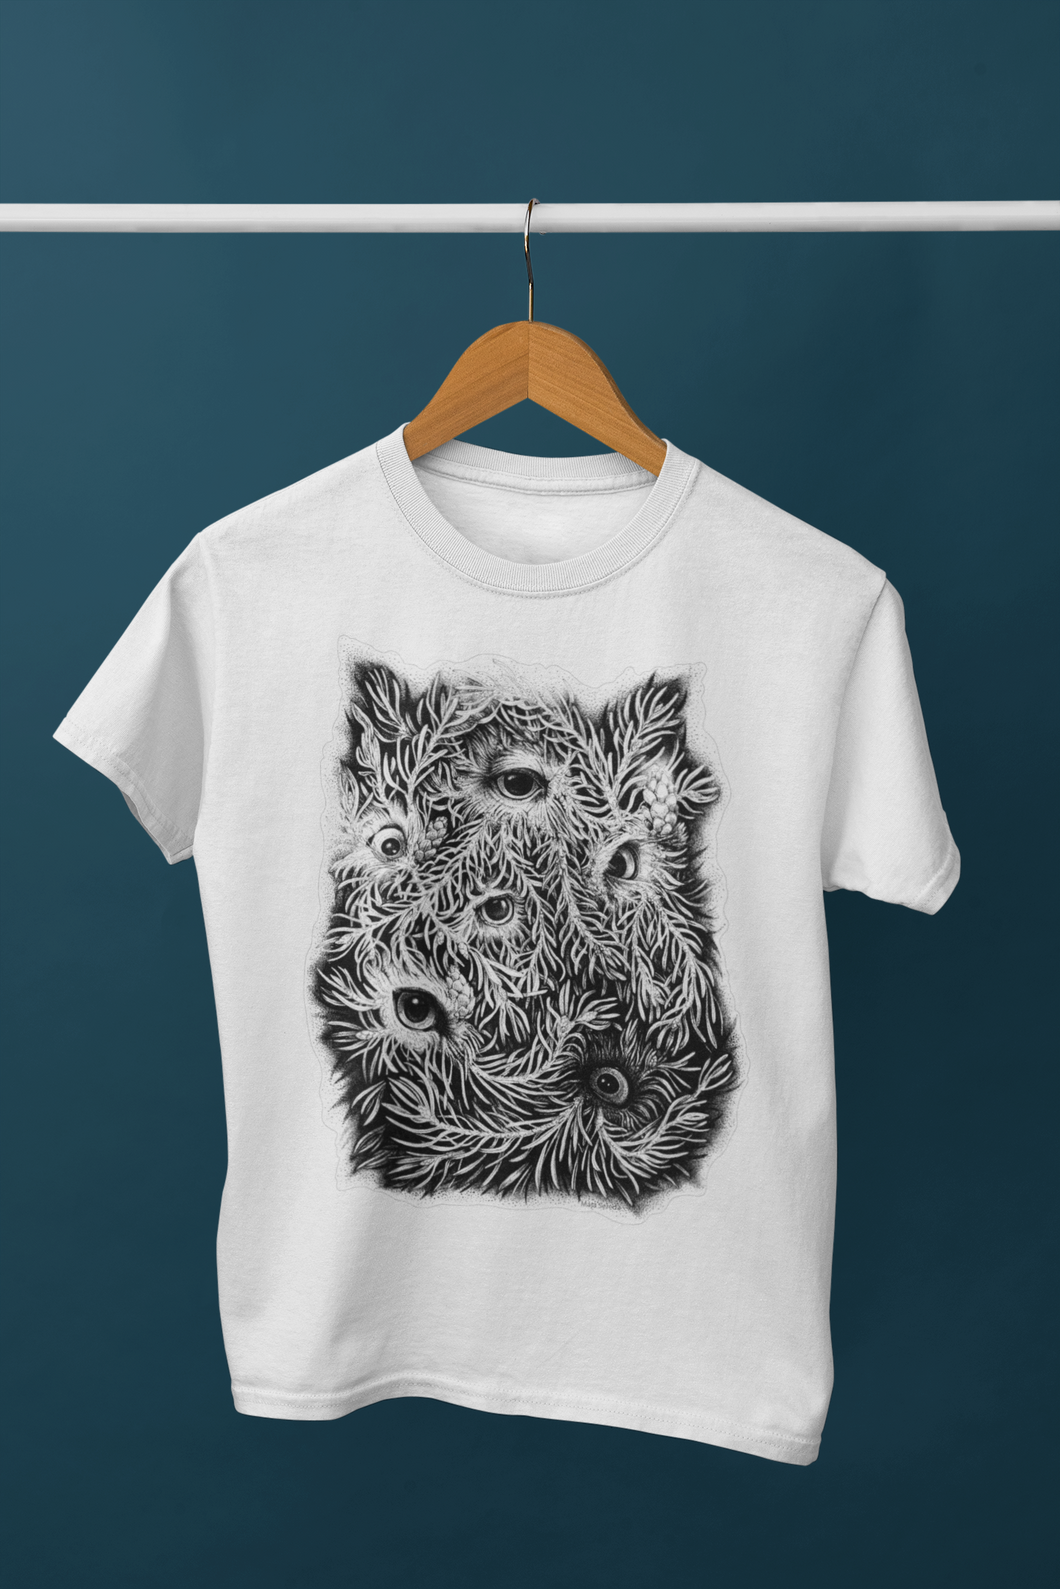 Owl Style Men's/Unisex or Women's T-shirt